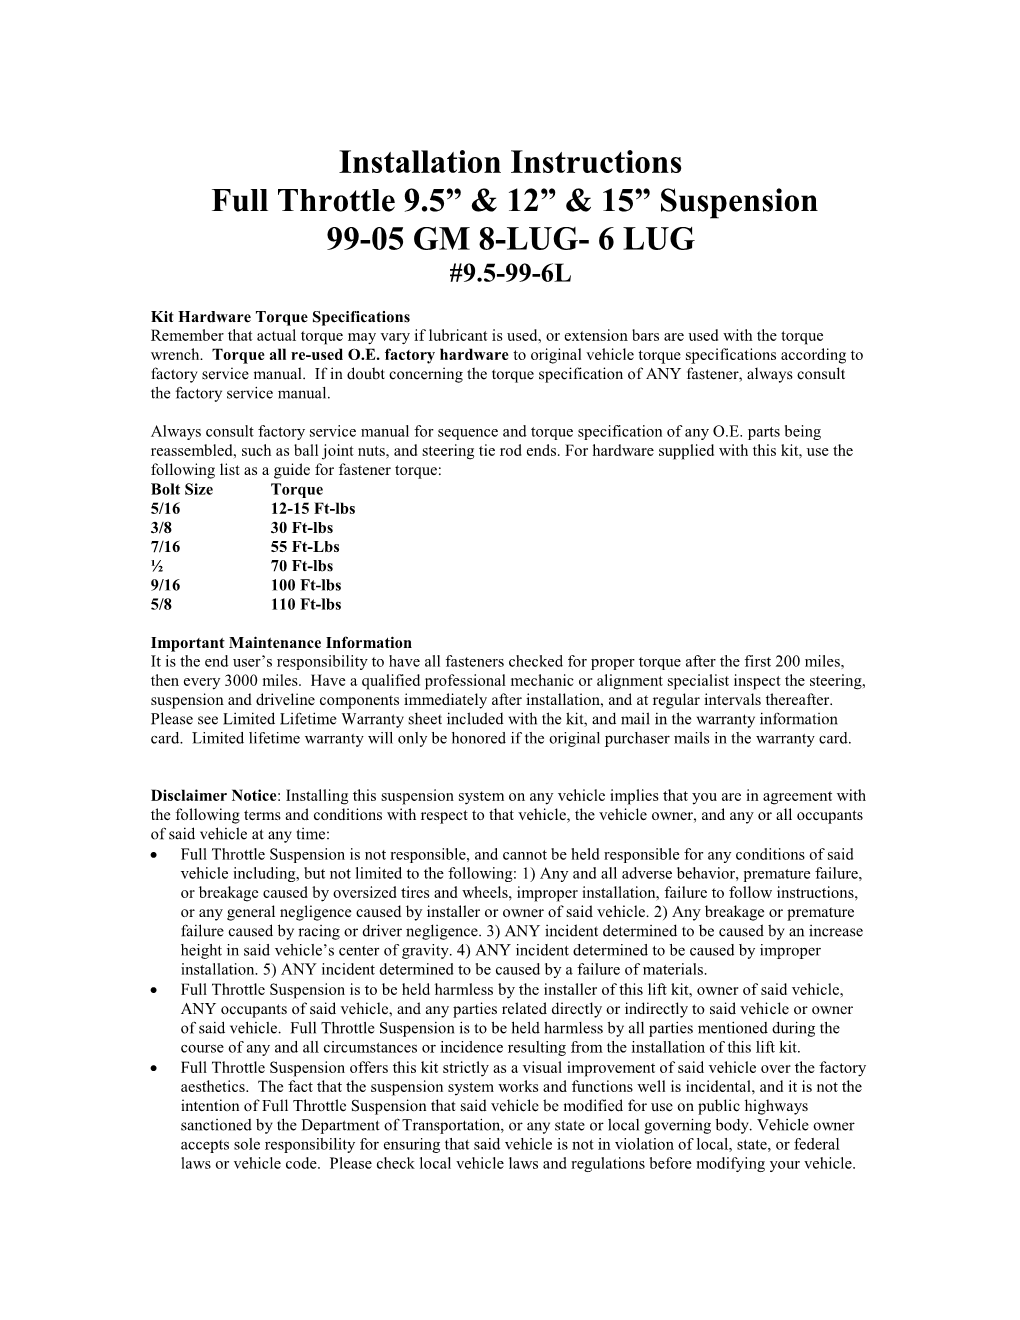 Installation Instructions Full Throttle 9.5” & 12” & 15” Suspension 99-05